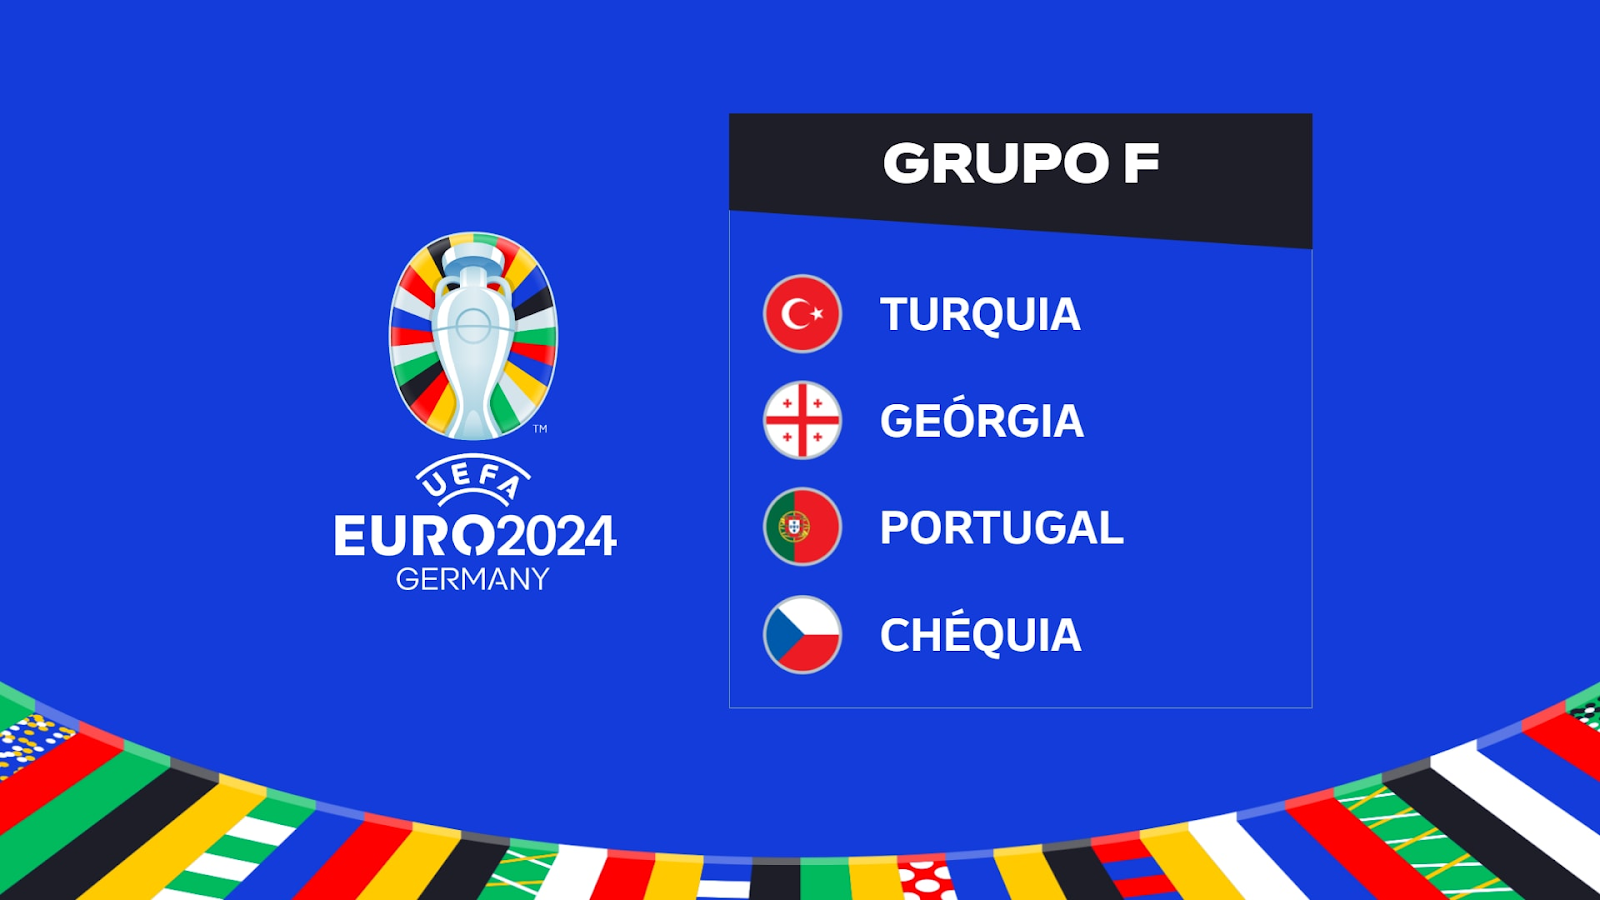 Análises do Grupo F no Euro 2024: Portugal inicia caminhada em busca do bicampeonato europeu